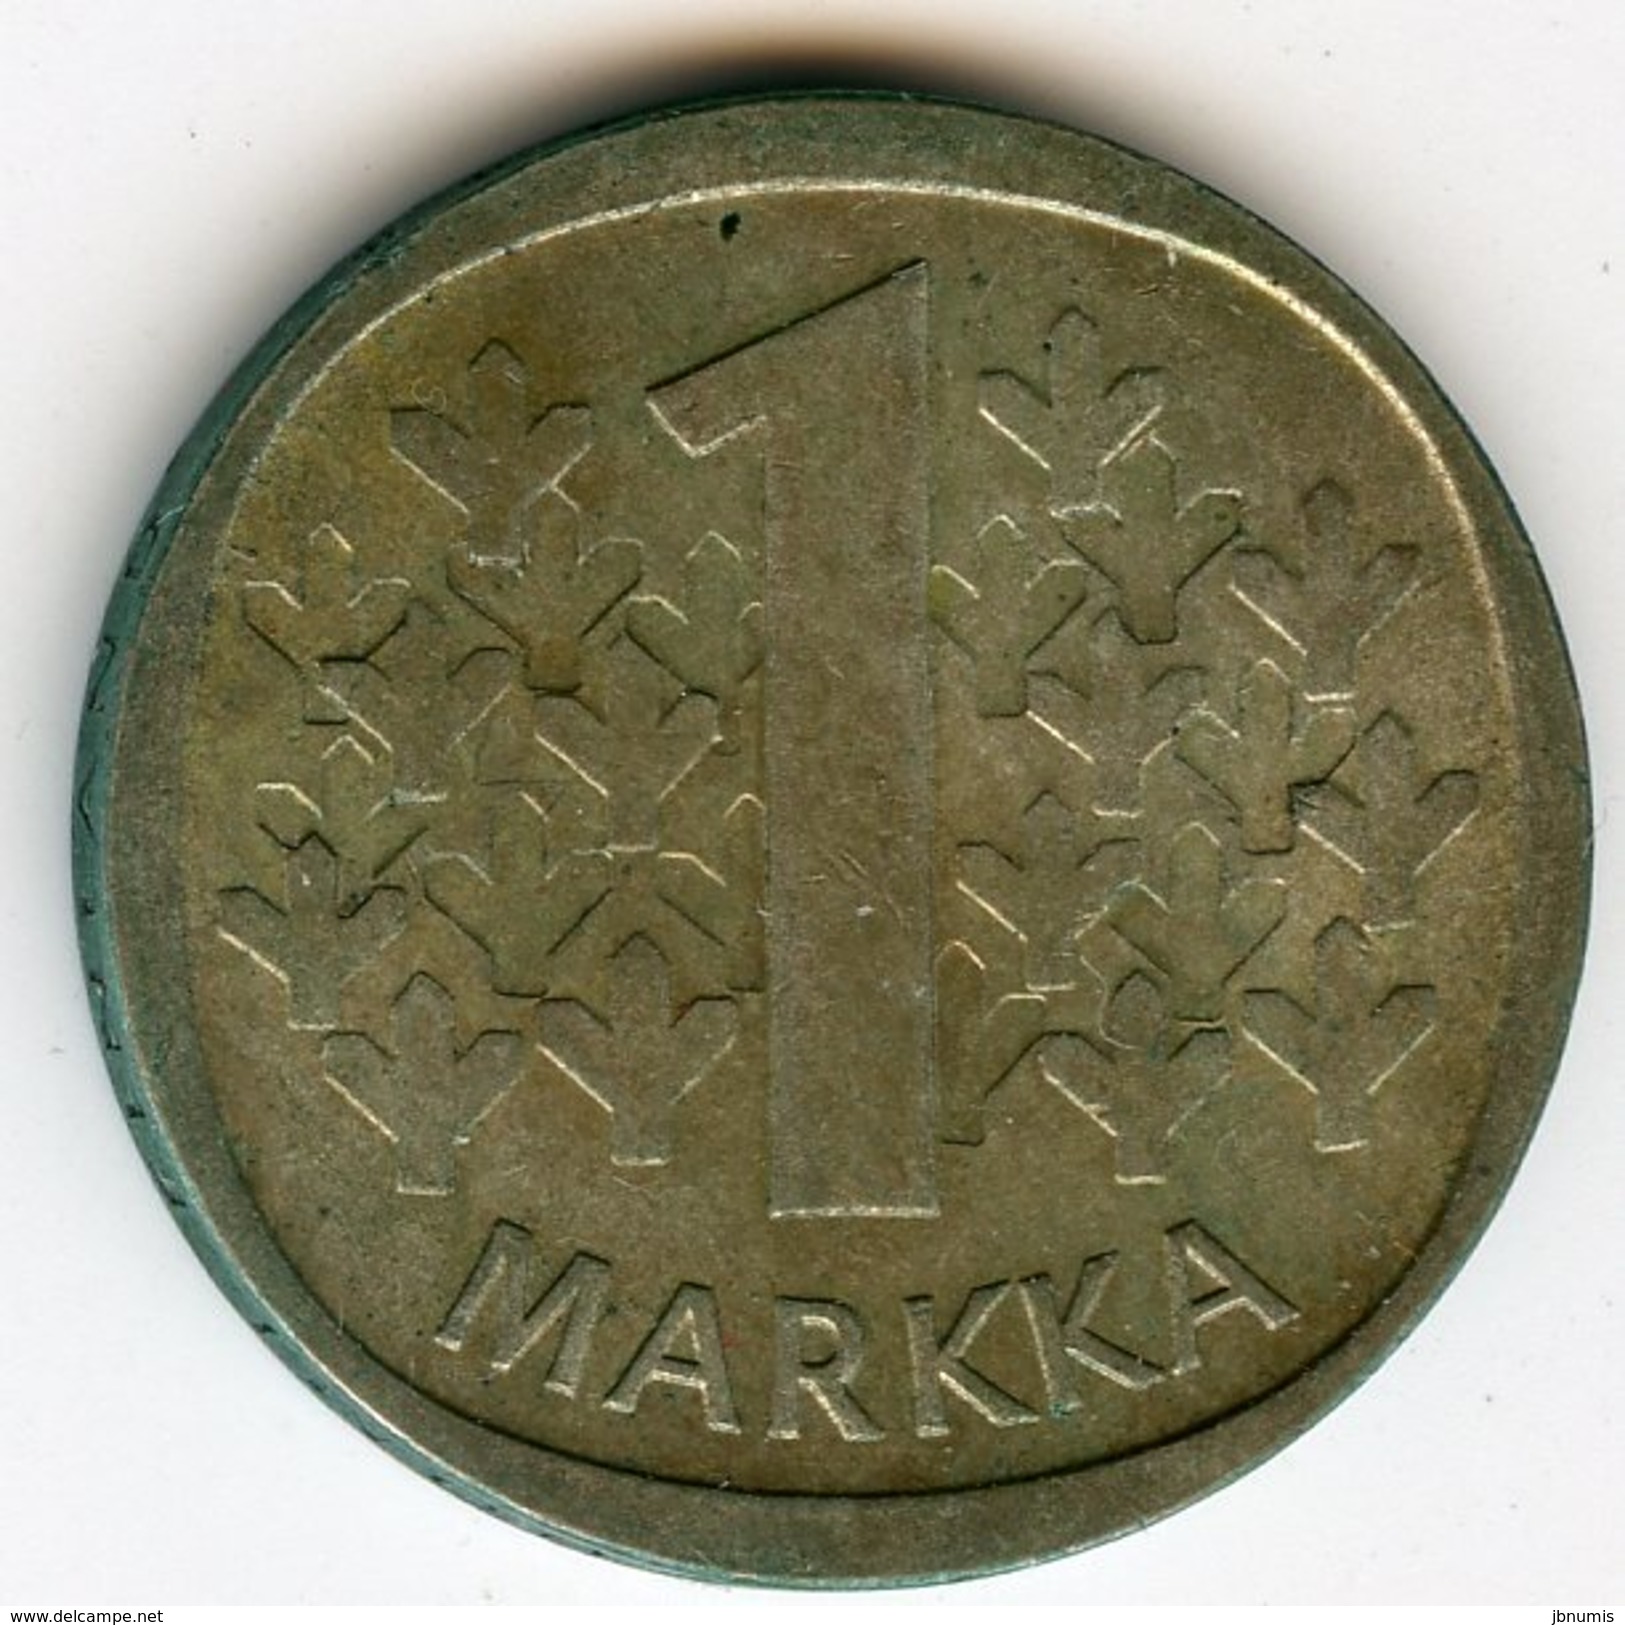 Finlande Finland 1 Markka 1967 S Argent KM 49 - Finlande